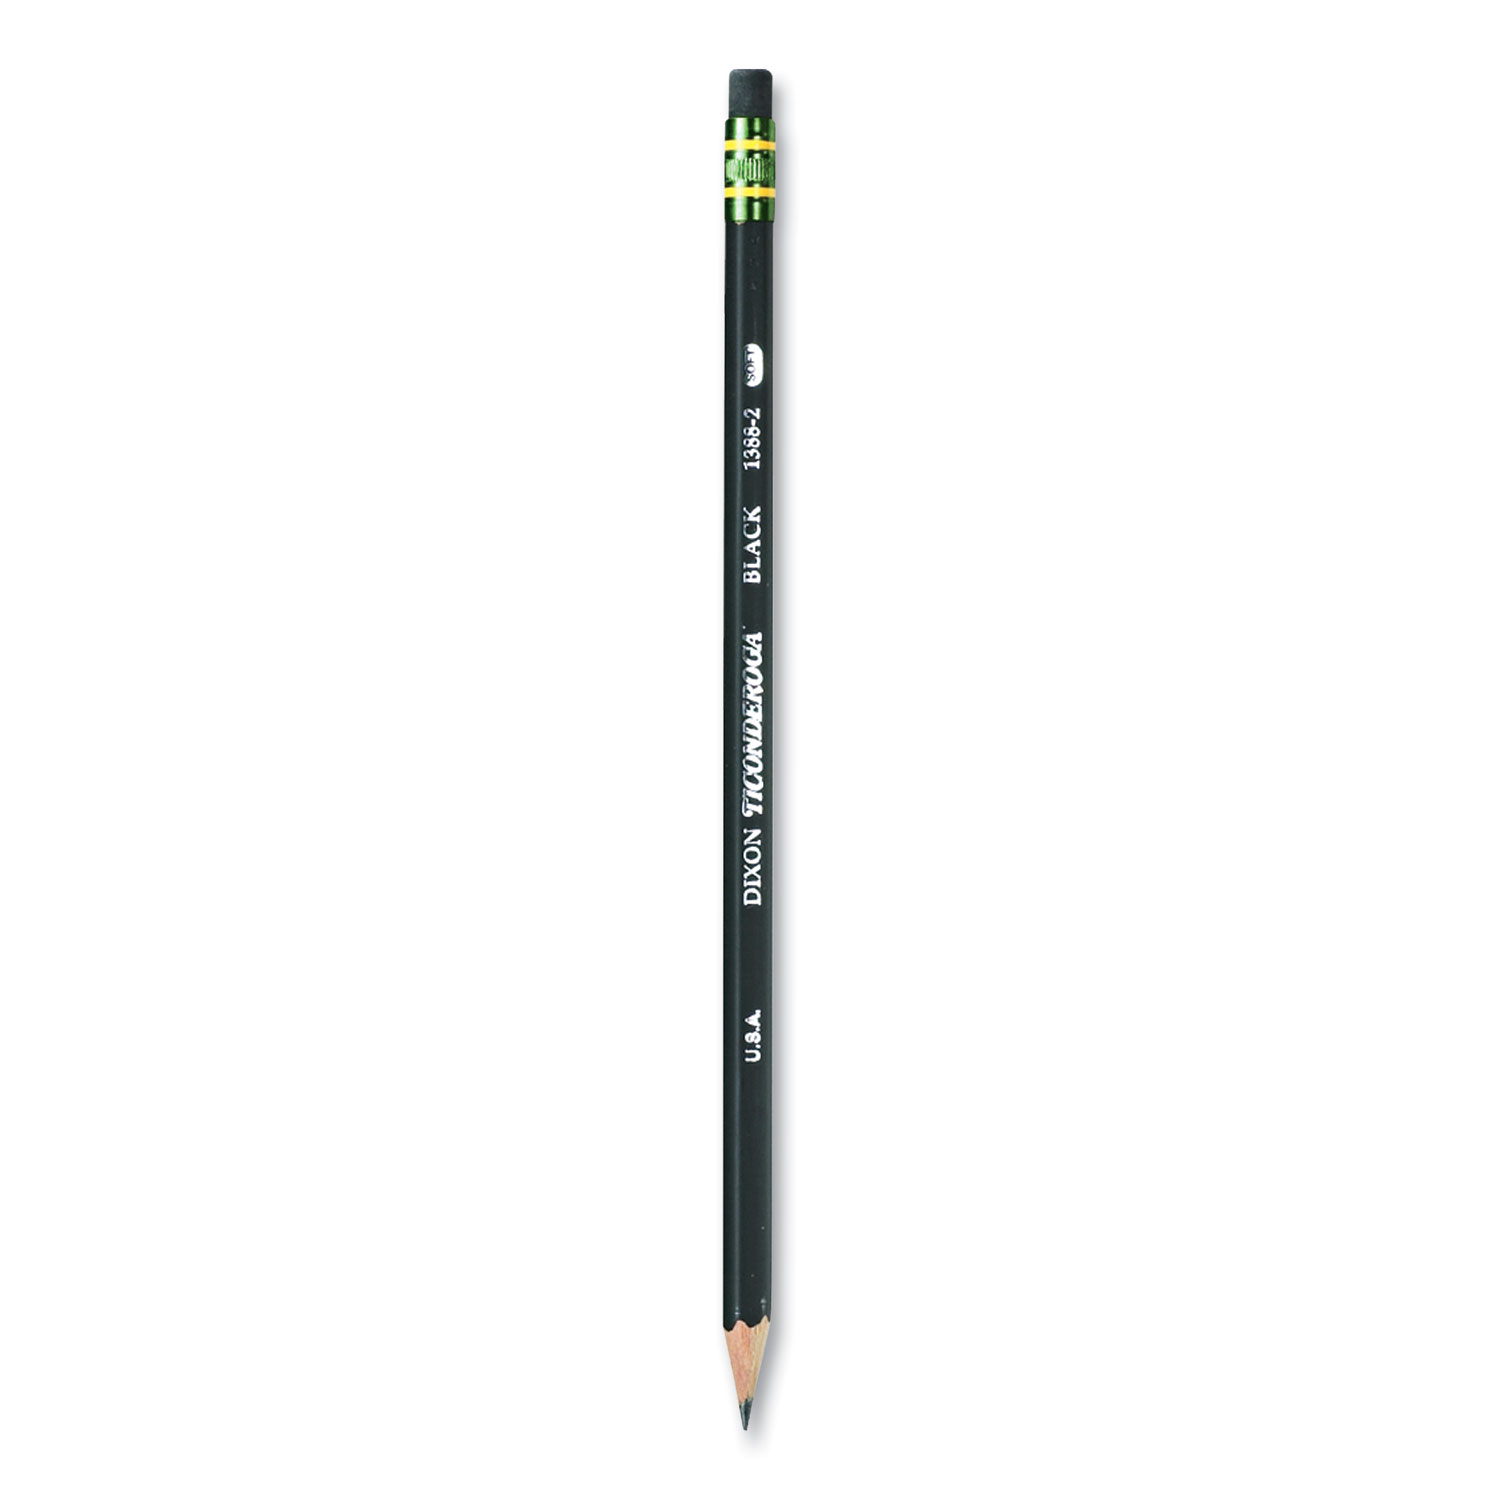 No. 2 Pencil Value Pack, HB (#2), Black Lead, Yellow Barrel, 144